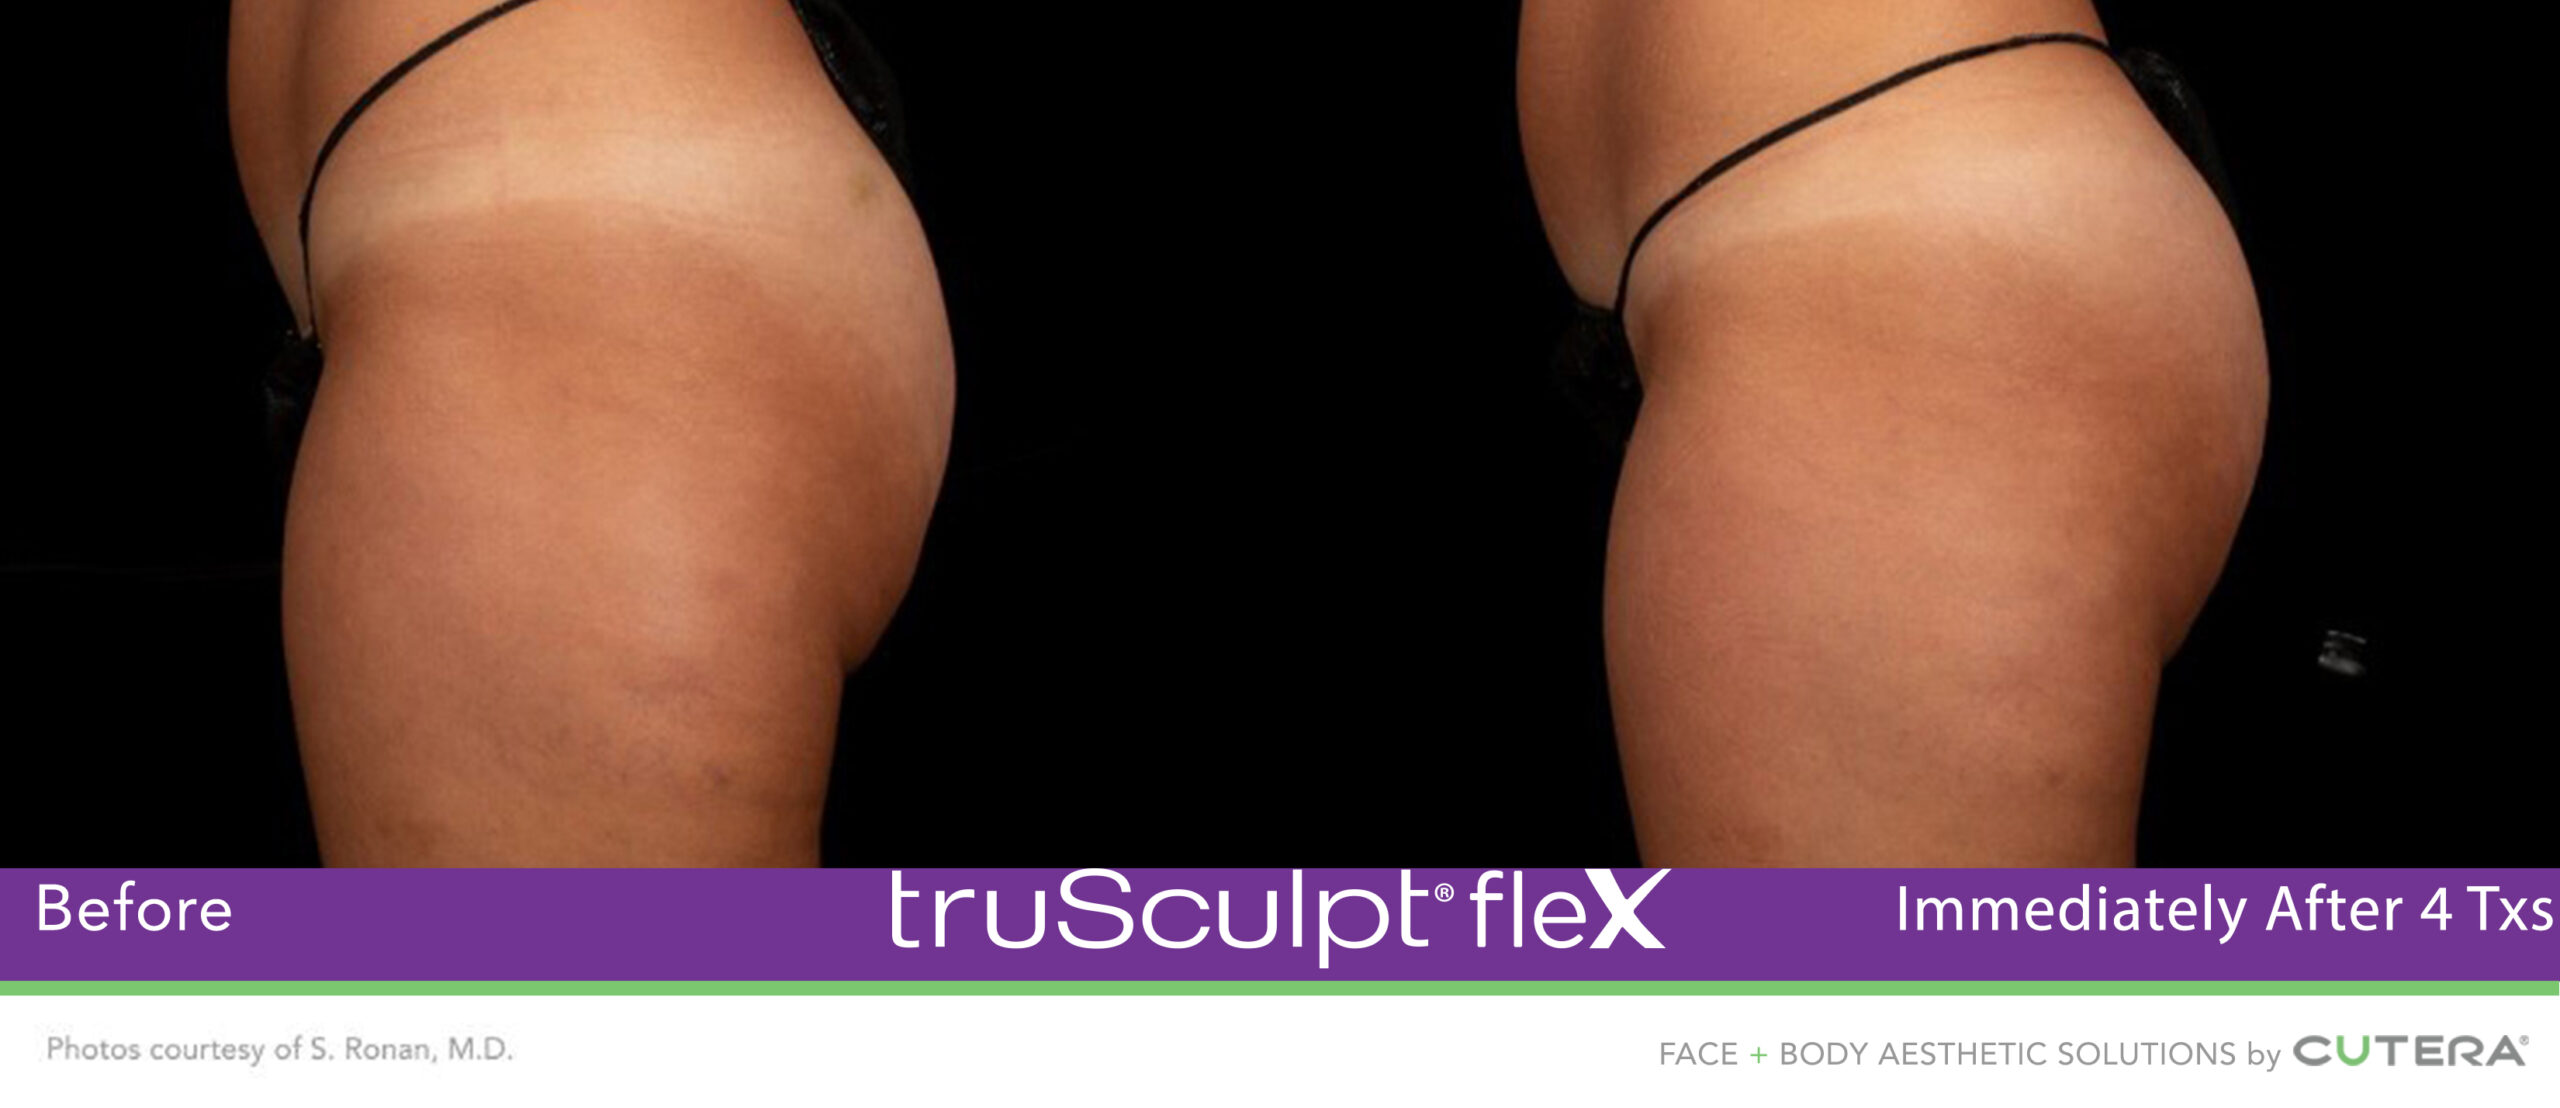 Trusculpt Flex – Before & After – Buttocks 2